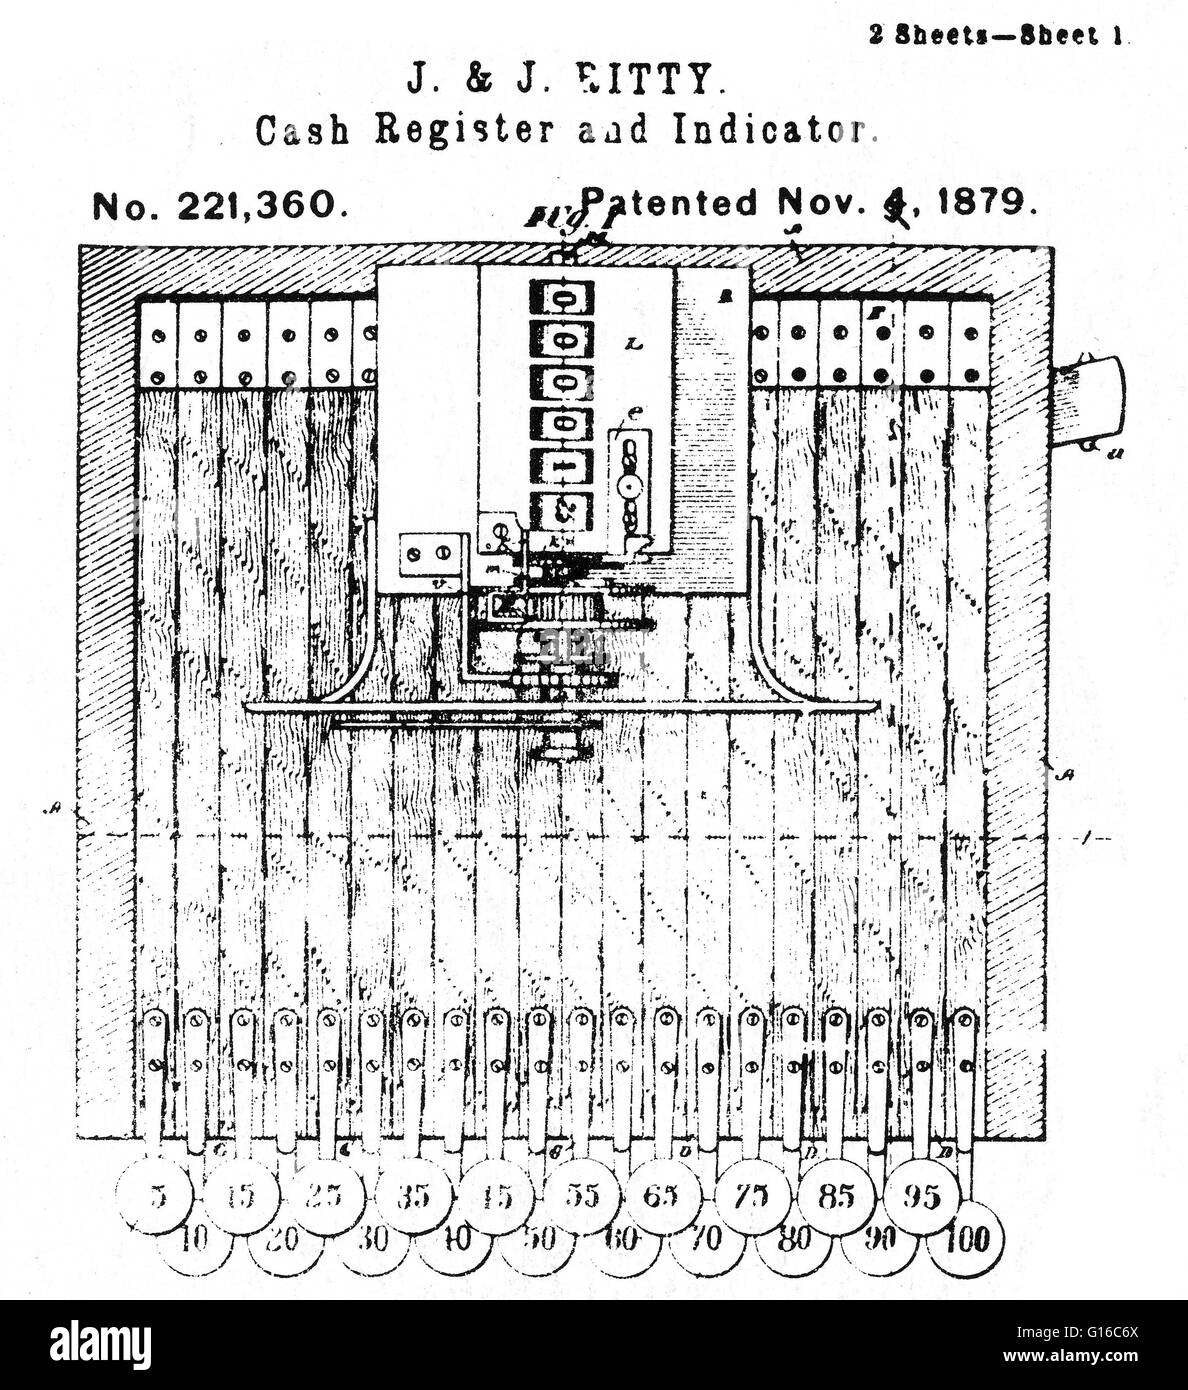 La primera caja registradora fue inventada por James Ritty tras la Guerra  Civil estadounidense. Él era el propietario de un saloon en Ohio, y quería  dejar de empleados de hurto de sus